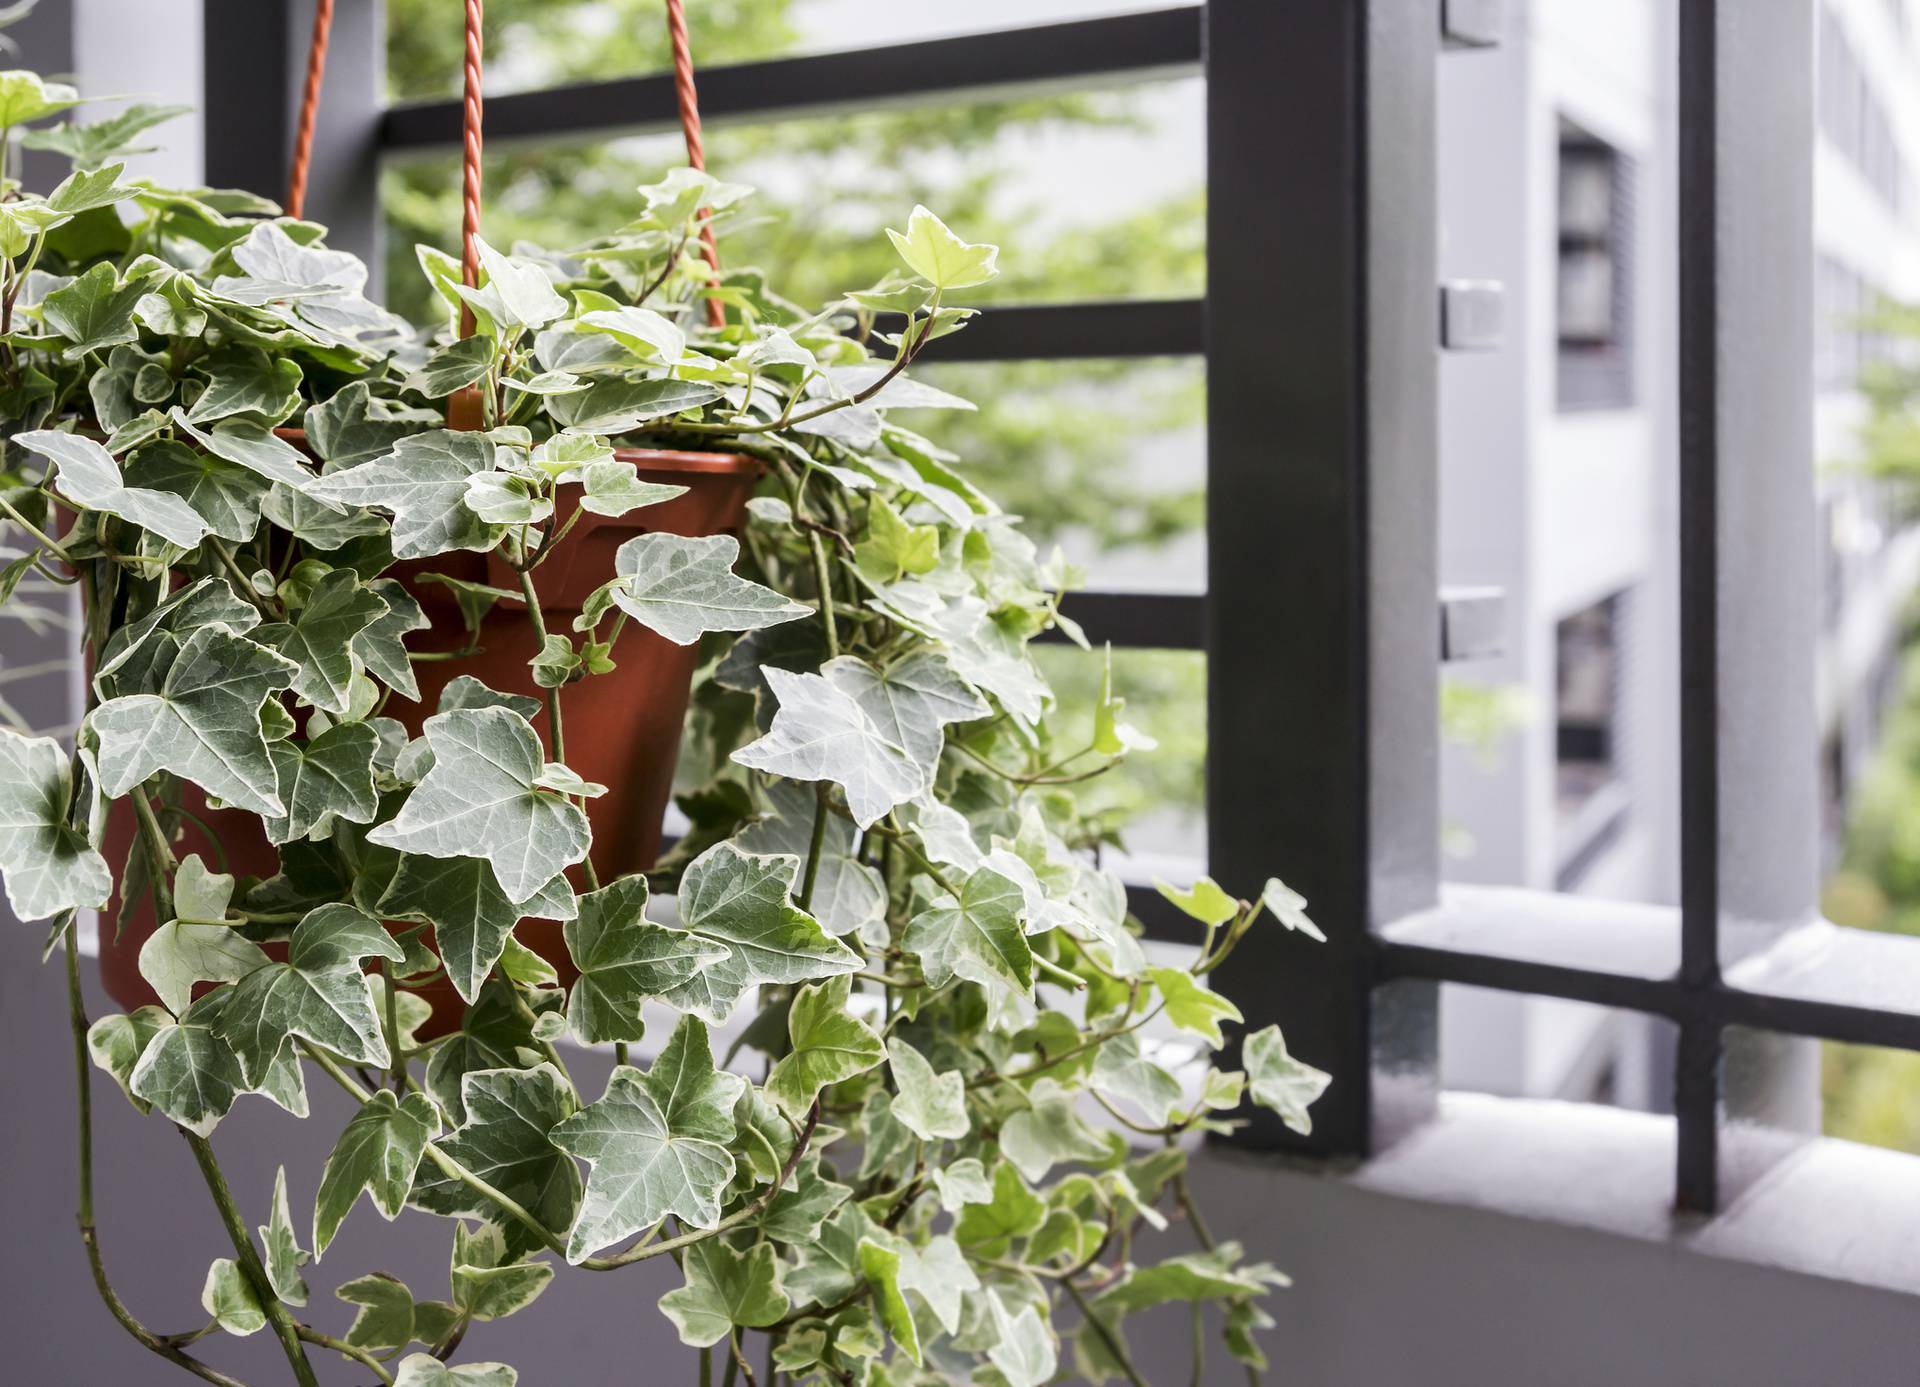 Pročistite zrak prirodno uz biljke koje unose svježinu u prostor